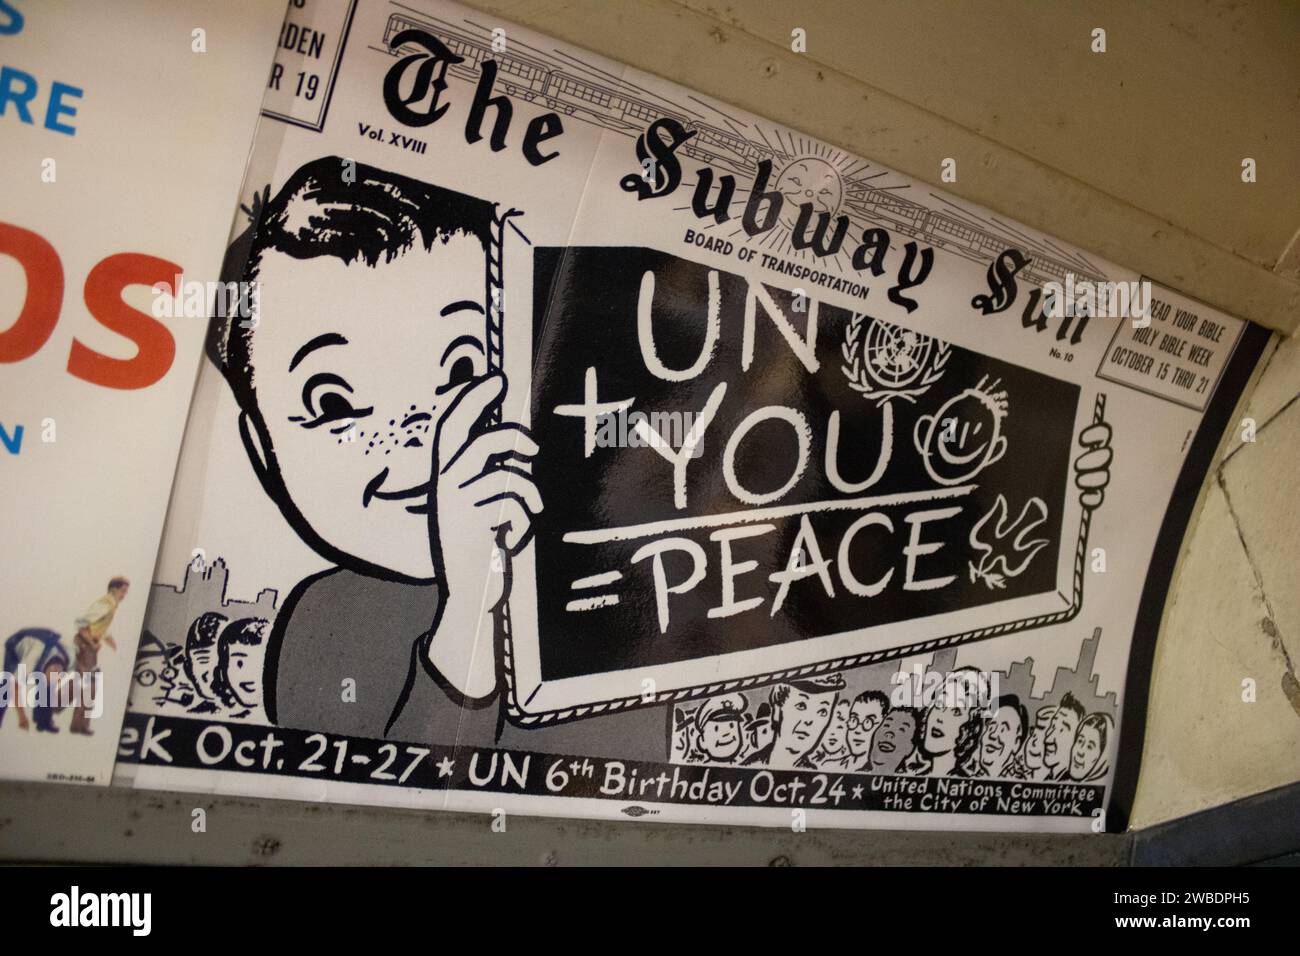 Une affiche de métro vintage des années 1950-60, au Transit Museum de New York Banque D'Images